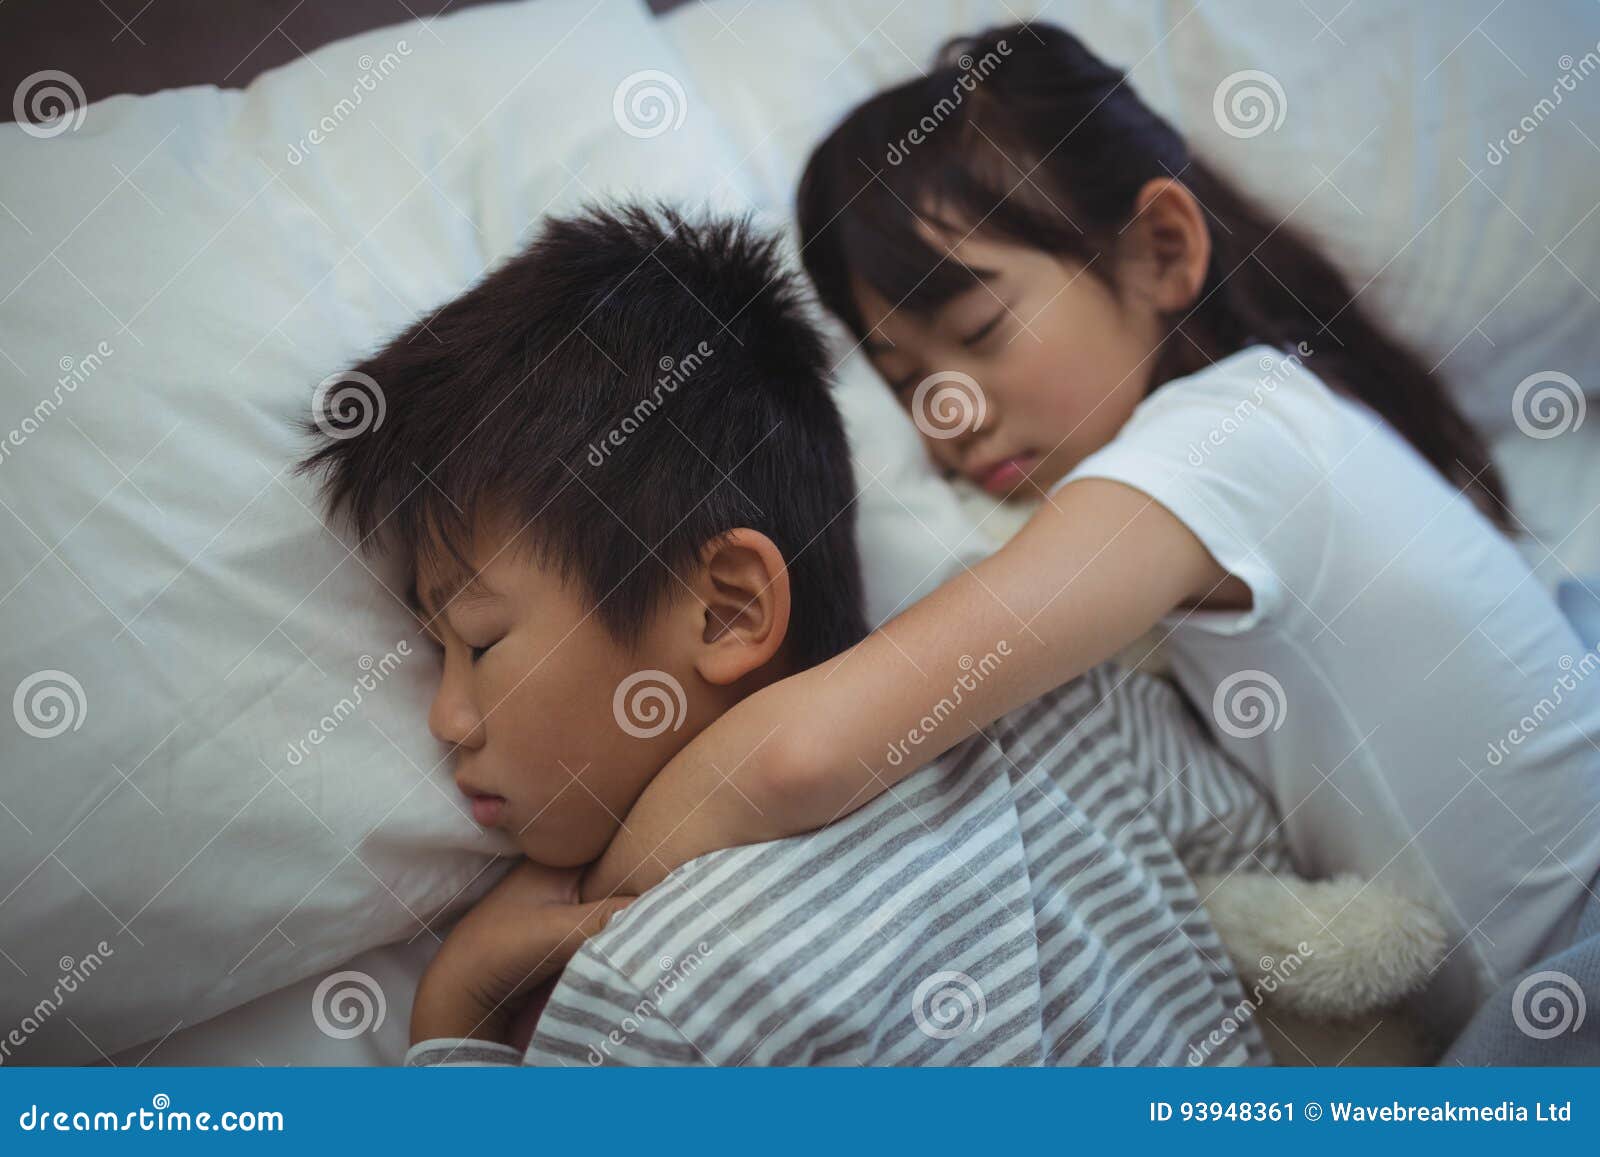 Залезла на спящего брата. Спящей сестра японская. Сестра и брать ночью в кровати. Сестрёнка заползла к брату в постель.